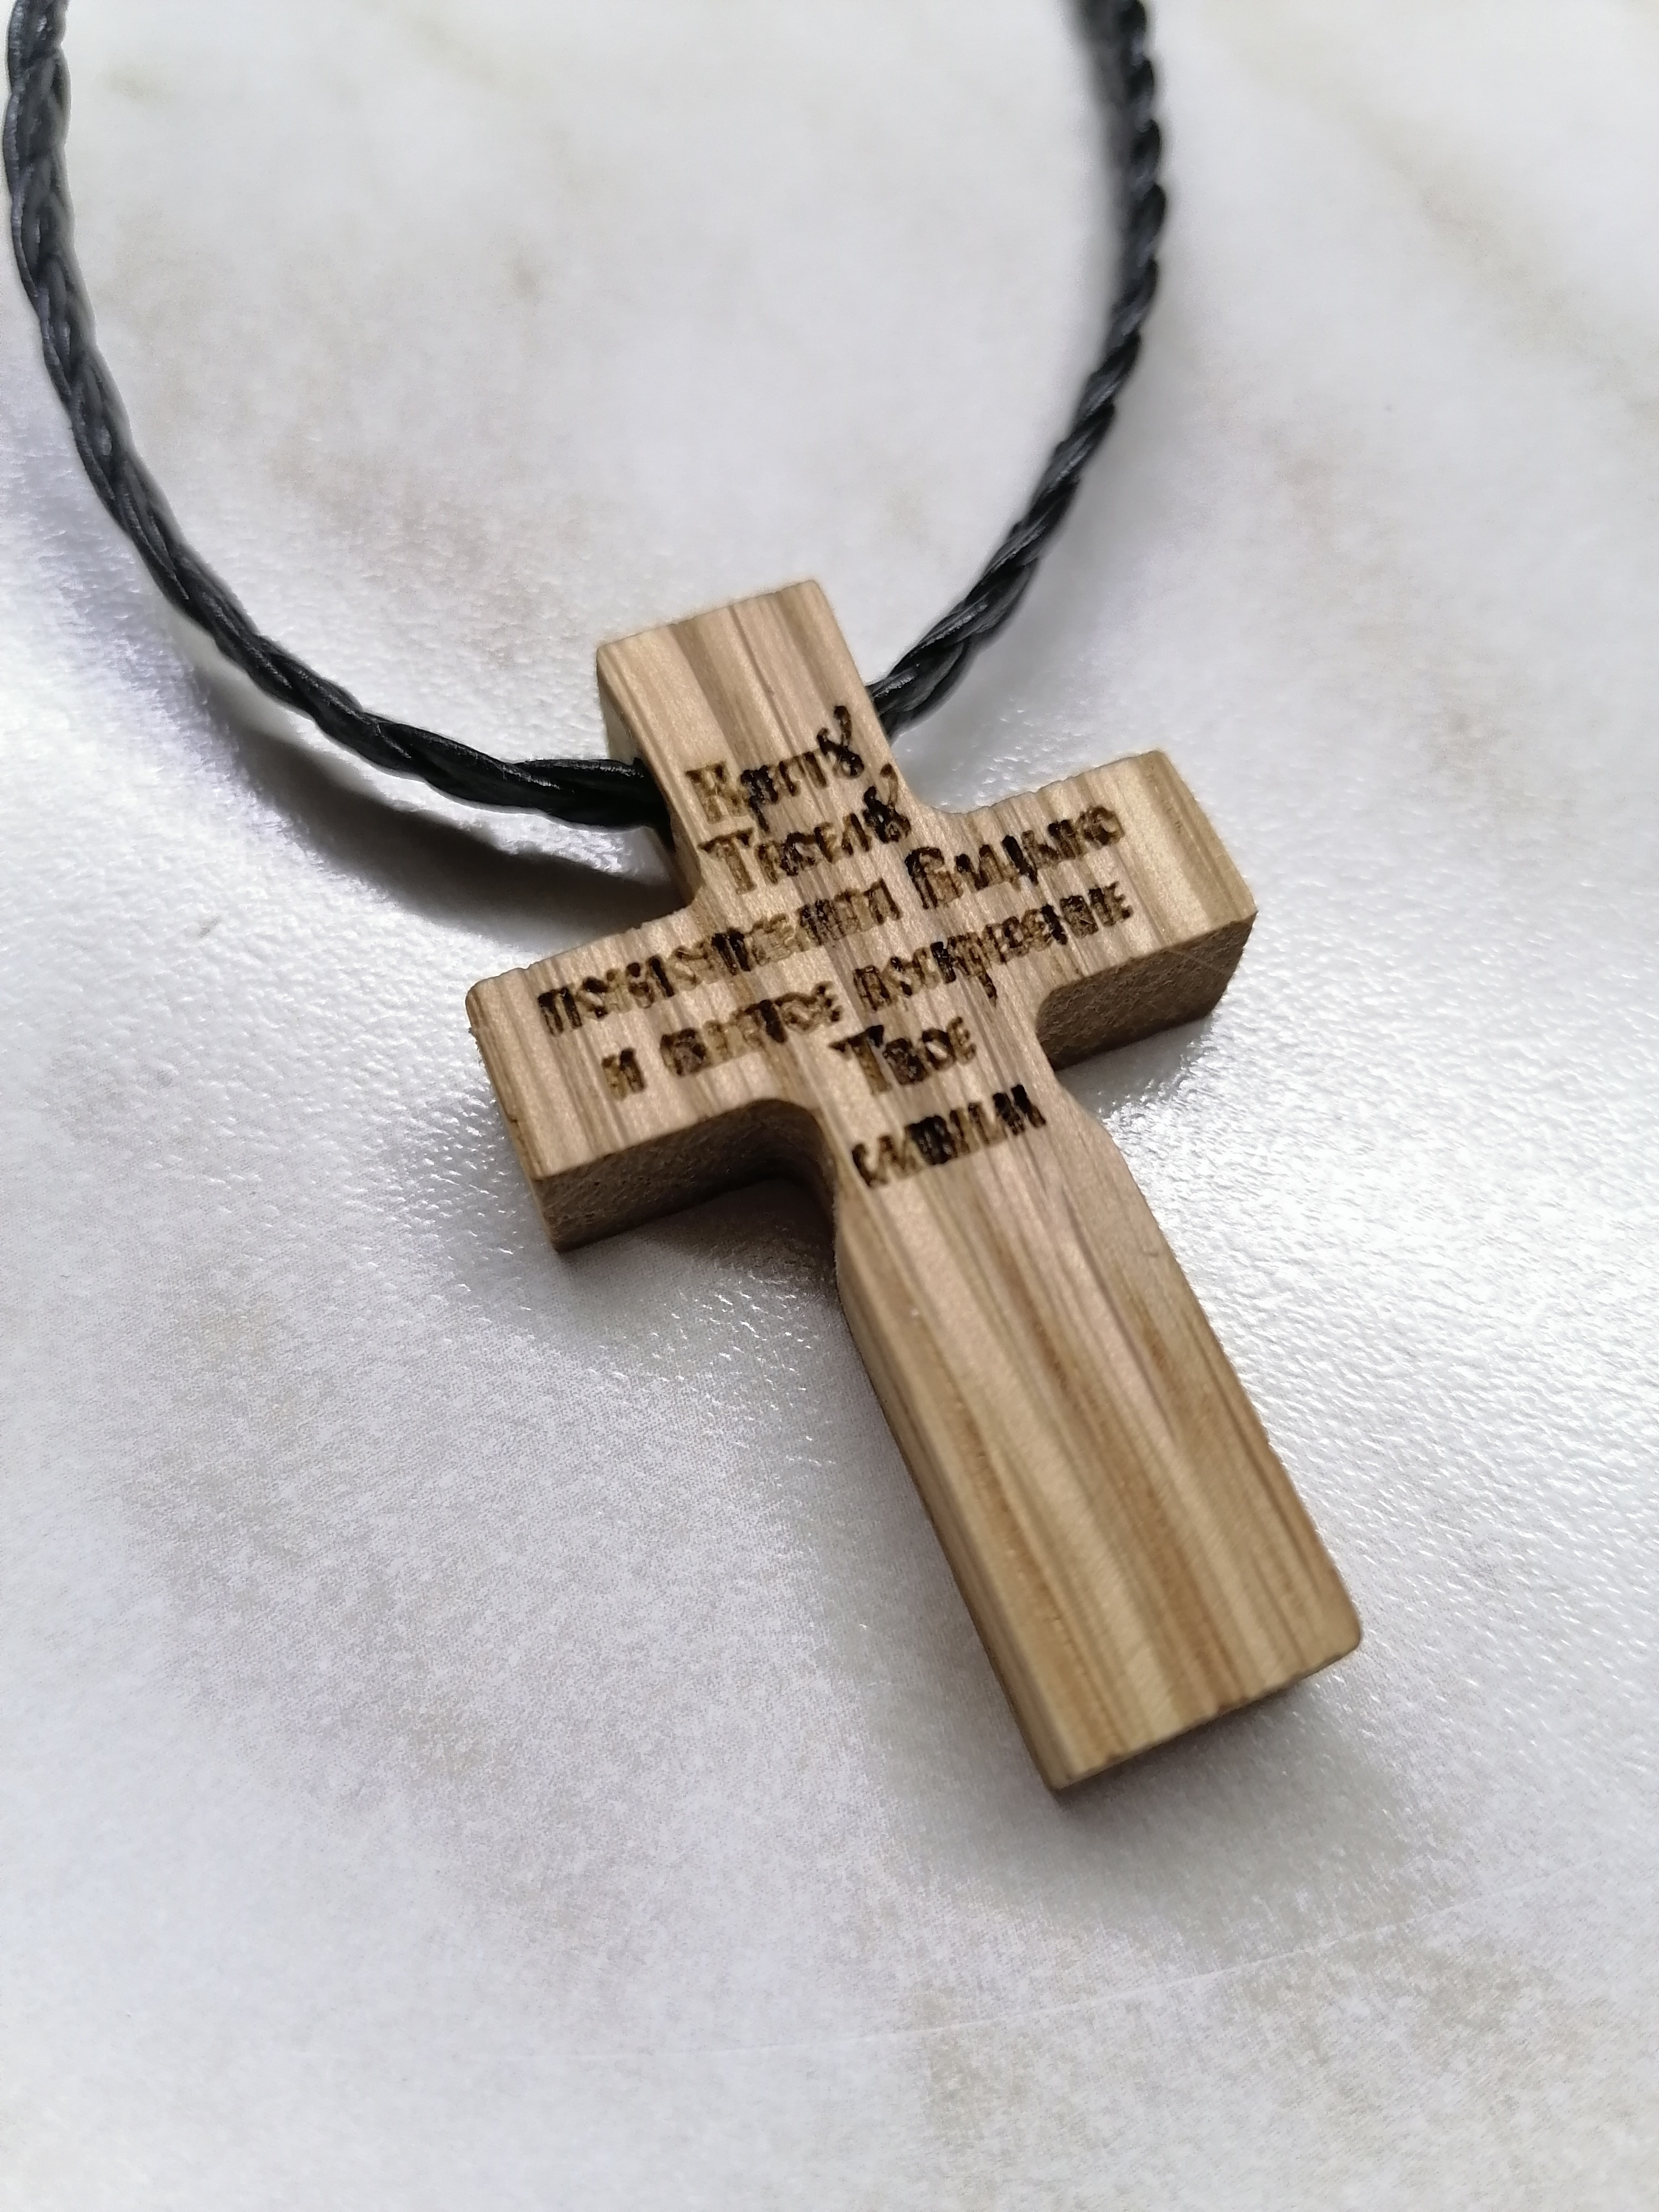 Купить нательный деревянный. Крест нательный деревянный. Крест нательный деревянный мужской. Крестик нательный деревянный маленький. Деревянный нагрудный крест.